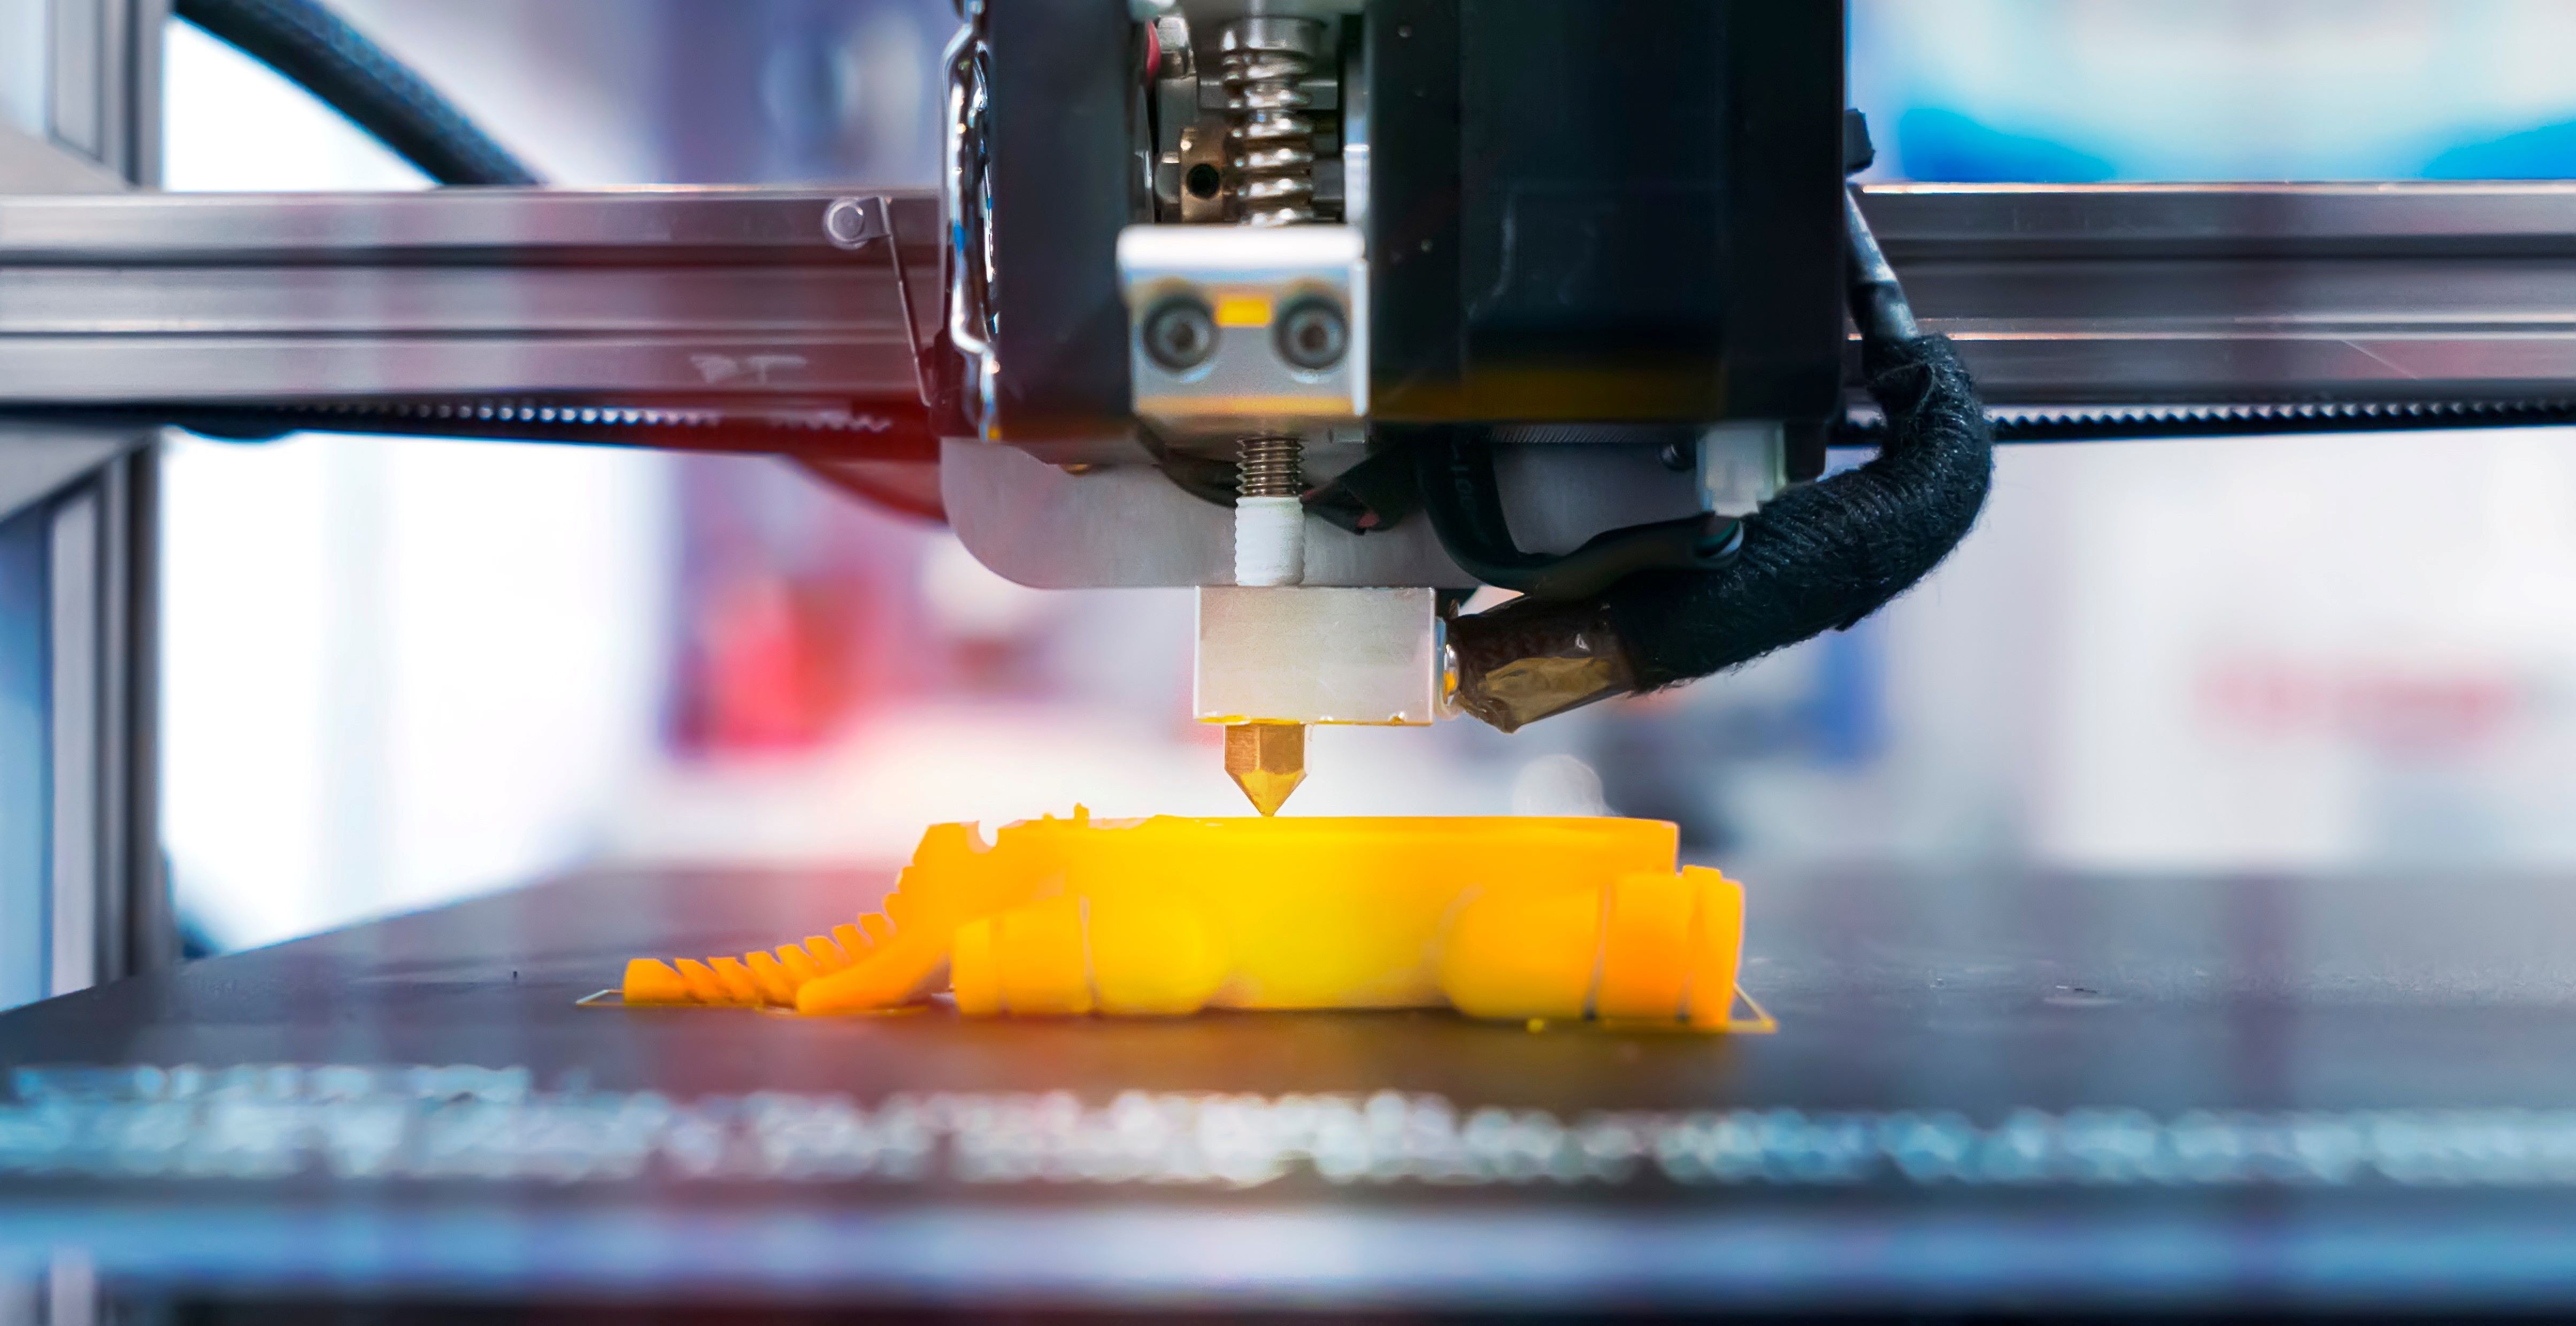 Új távlatok nyílhatnak meg a 3D-nyomtatásban